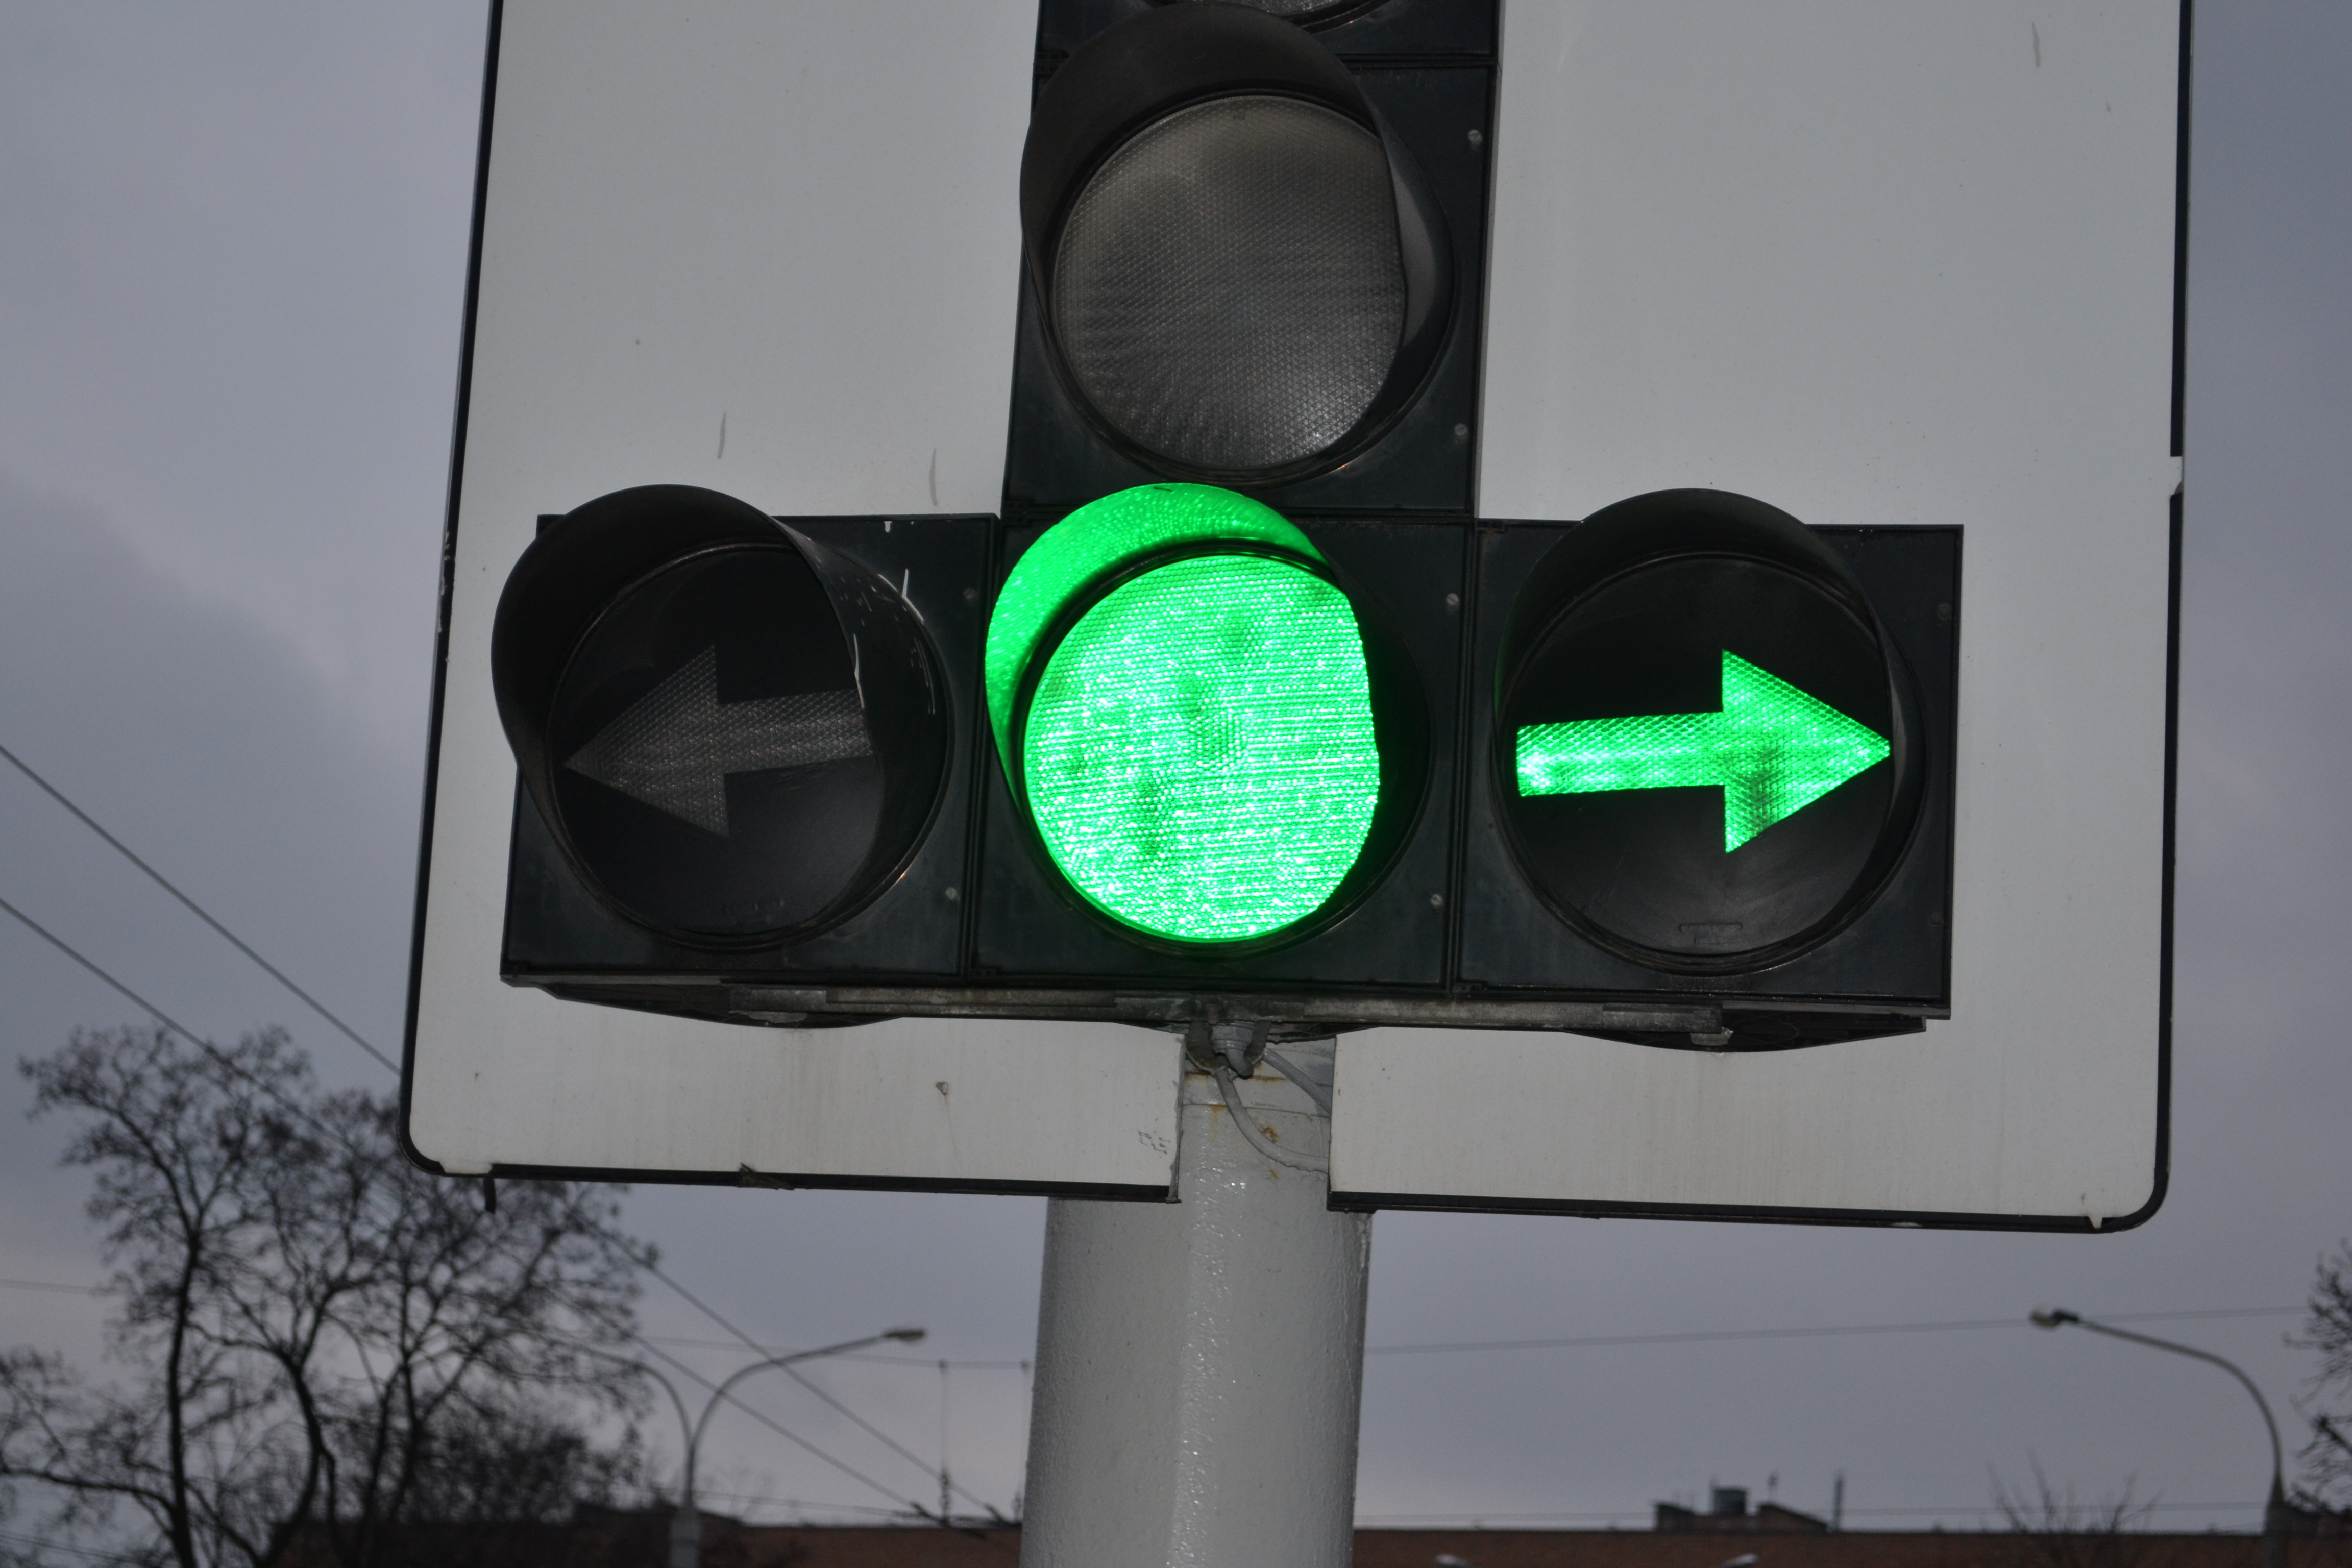 Светофоры всегда зеленые. Светофор с доп секцией. Светофор с поворотом. Светофор со стрелкой. Зеленый светофор.